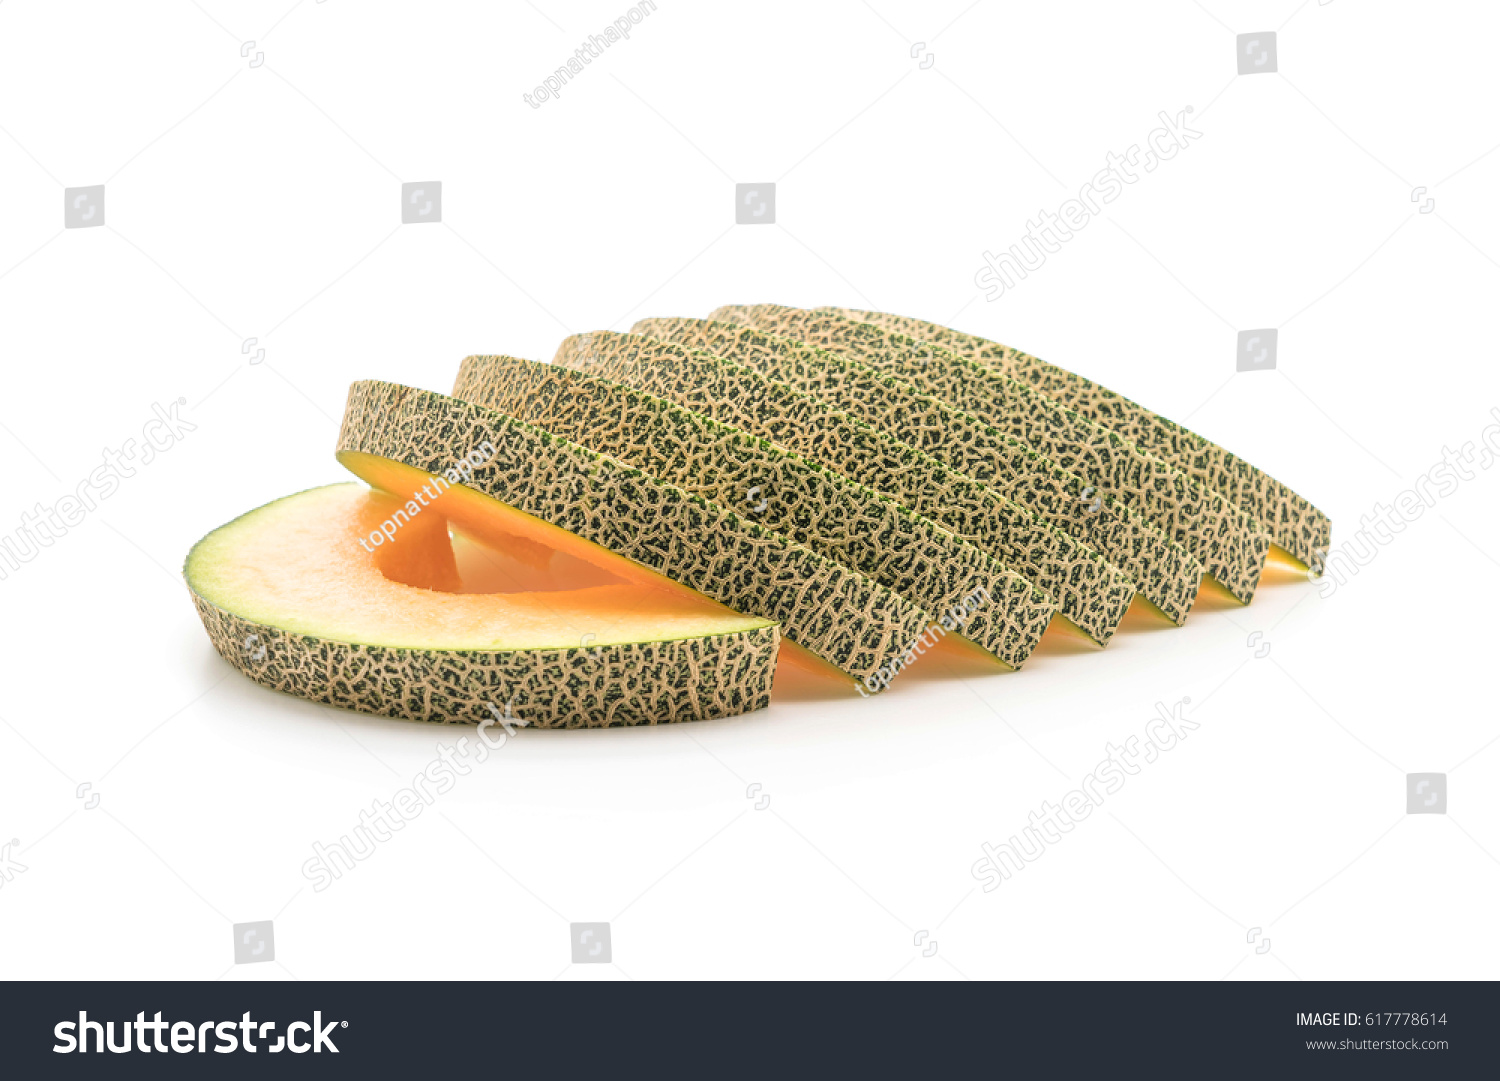 cantaloupe melon on white background #617778614